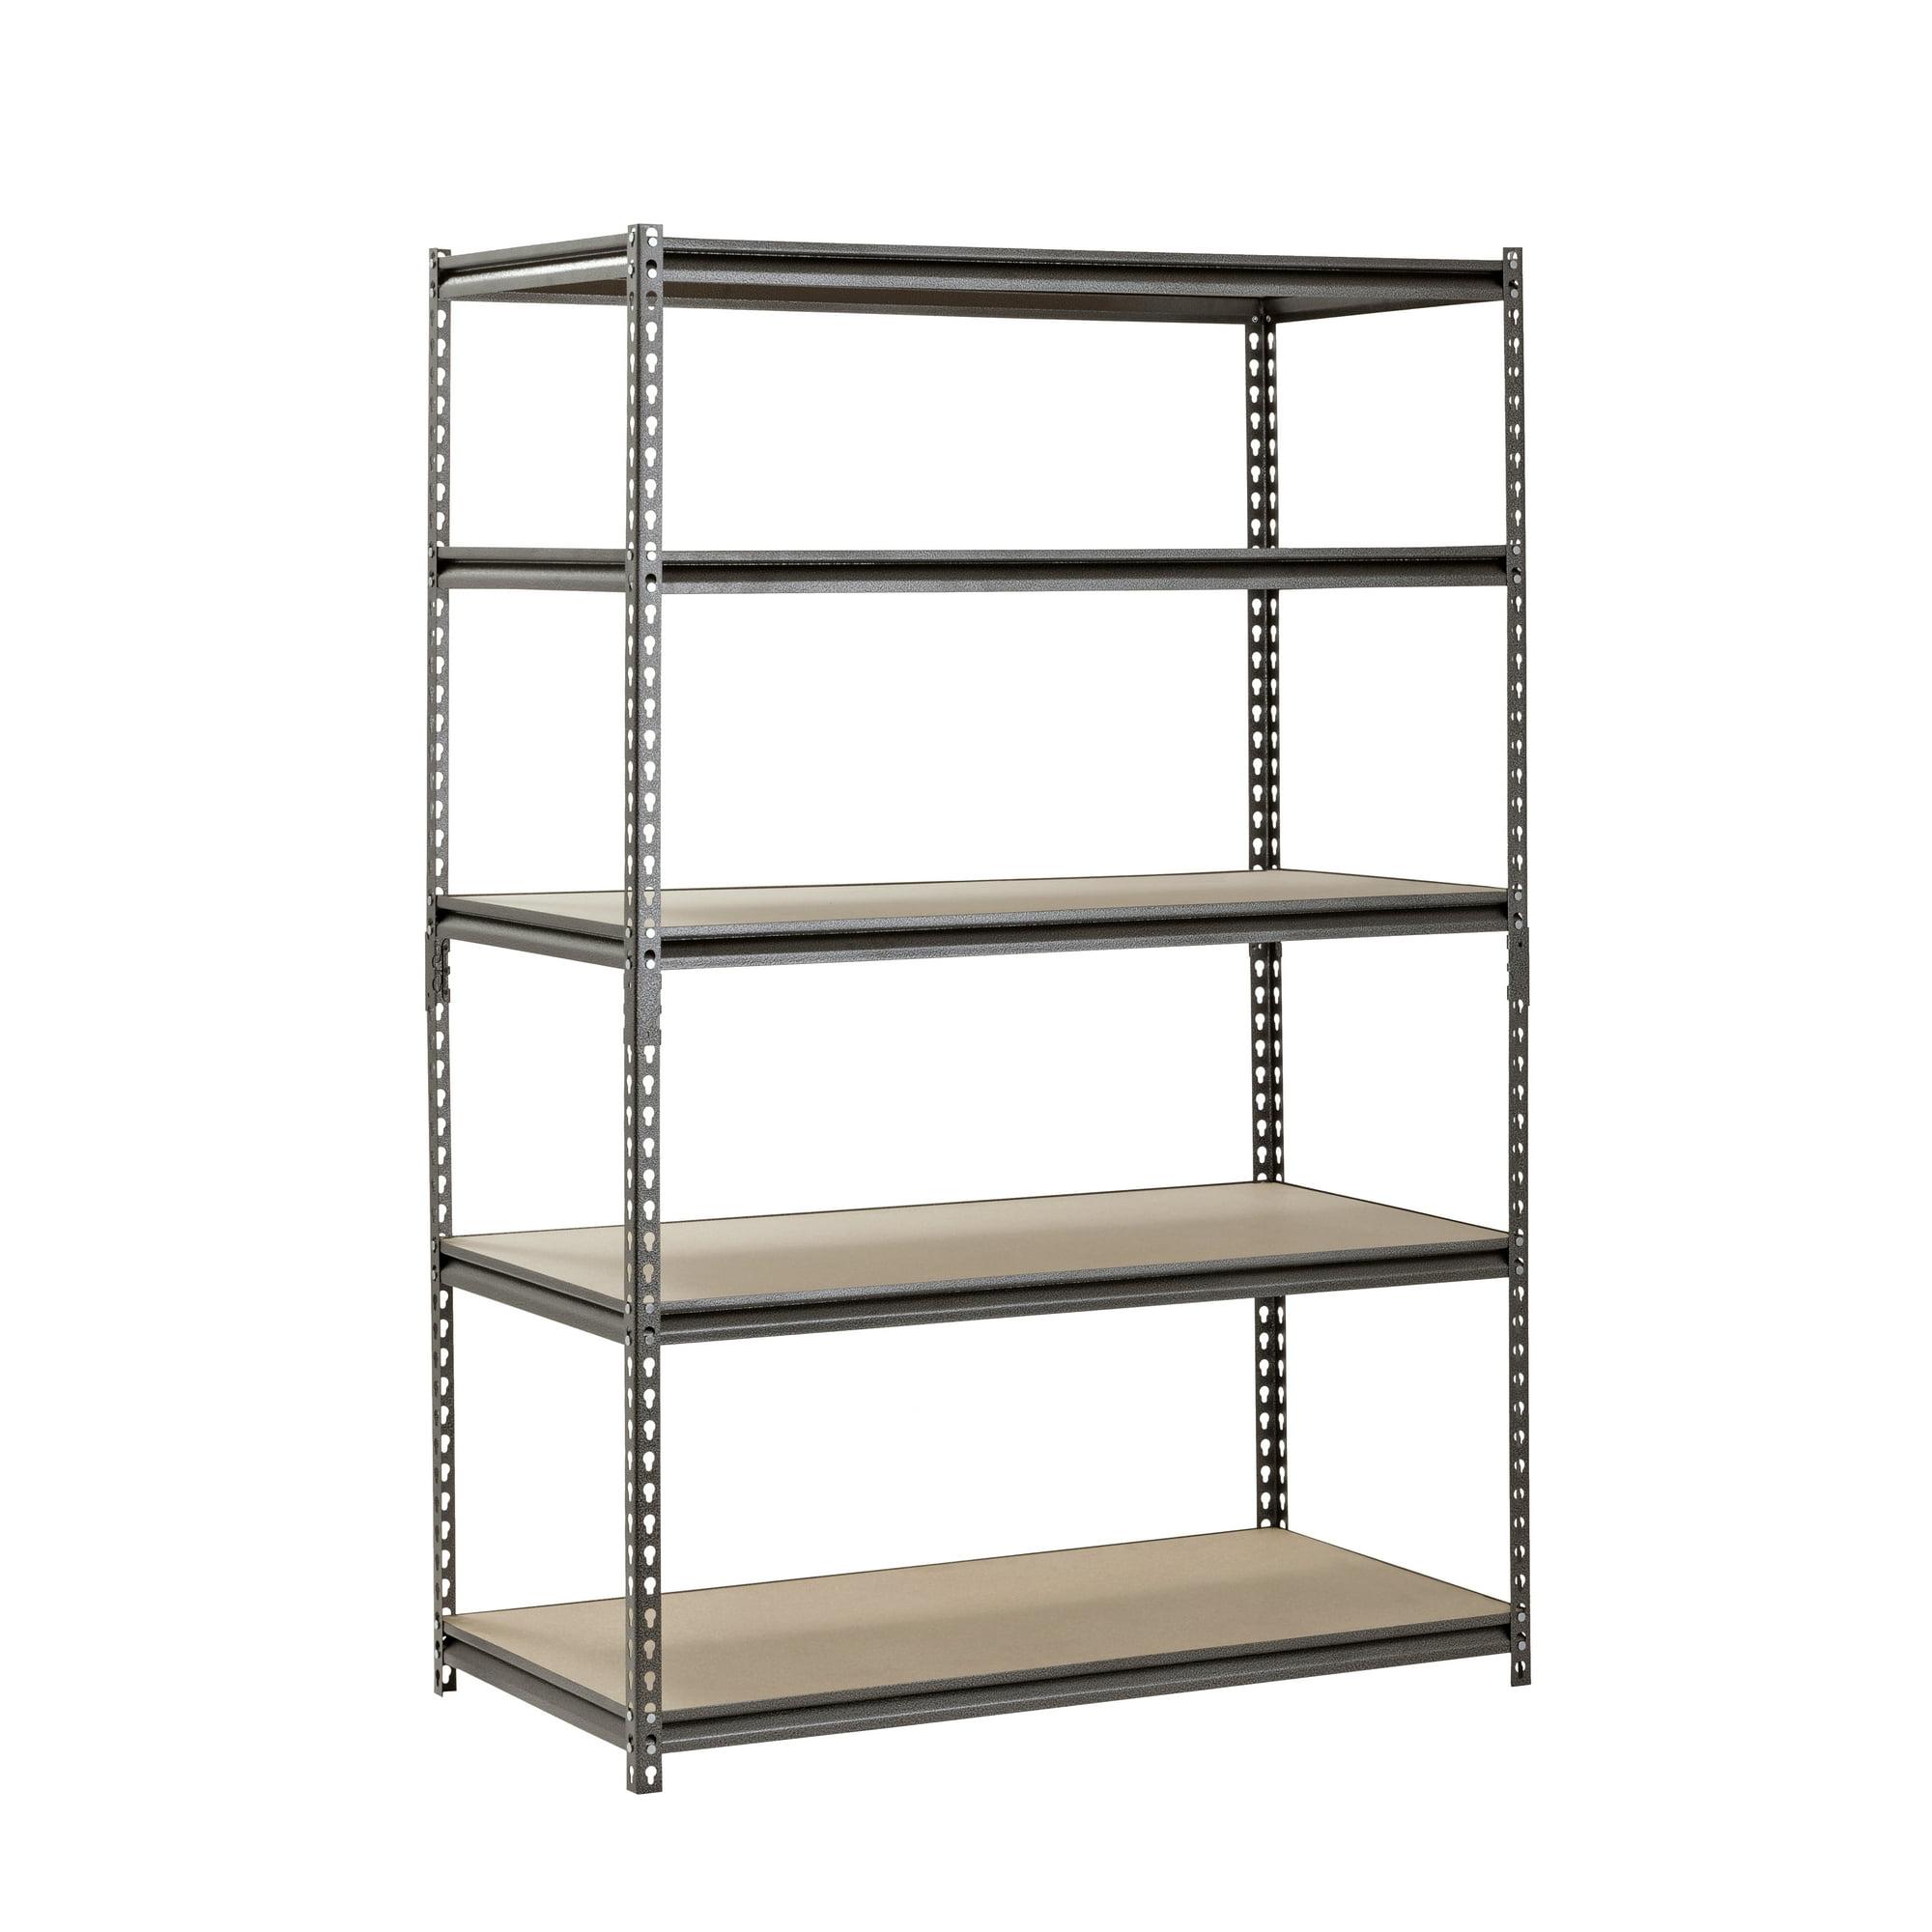 Muscle Rack 48"W x 24"D x 72"H 5-Shelf Steel Freestanding Shelves, Silver